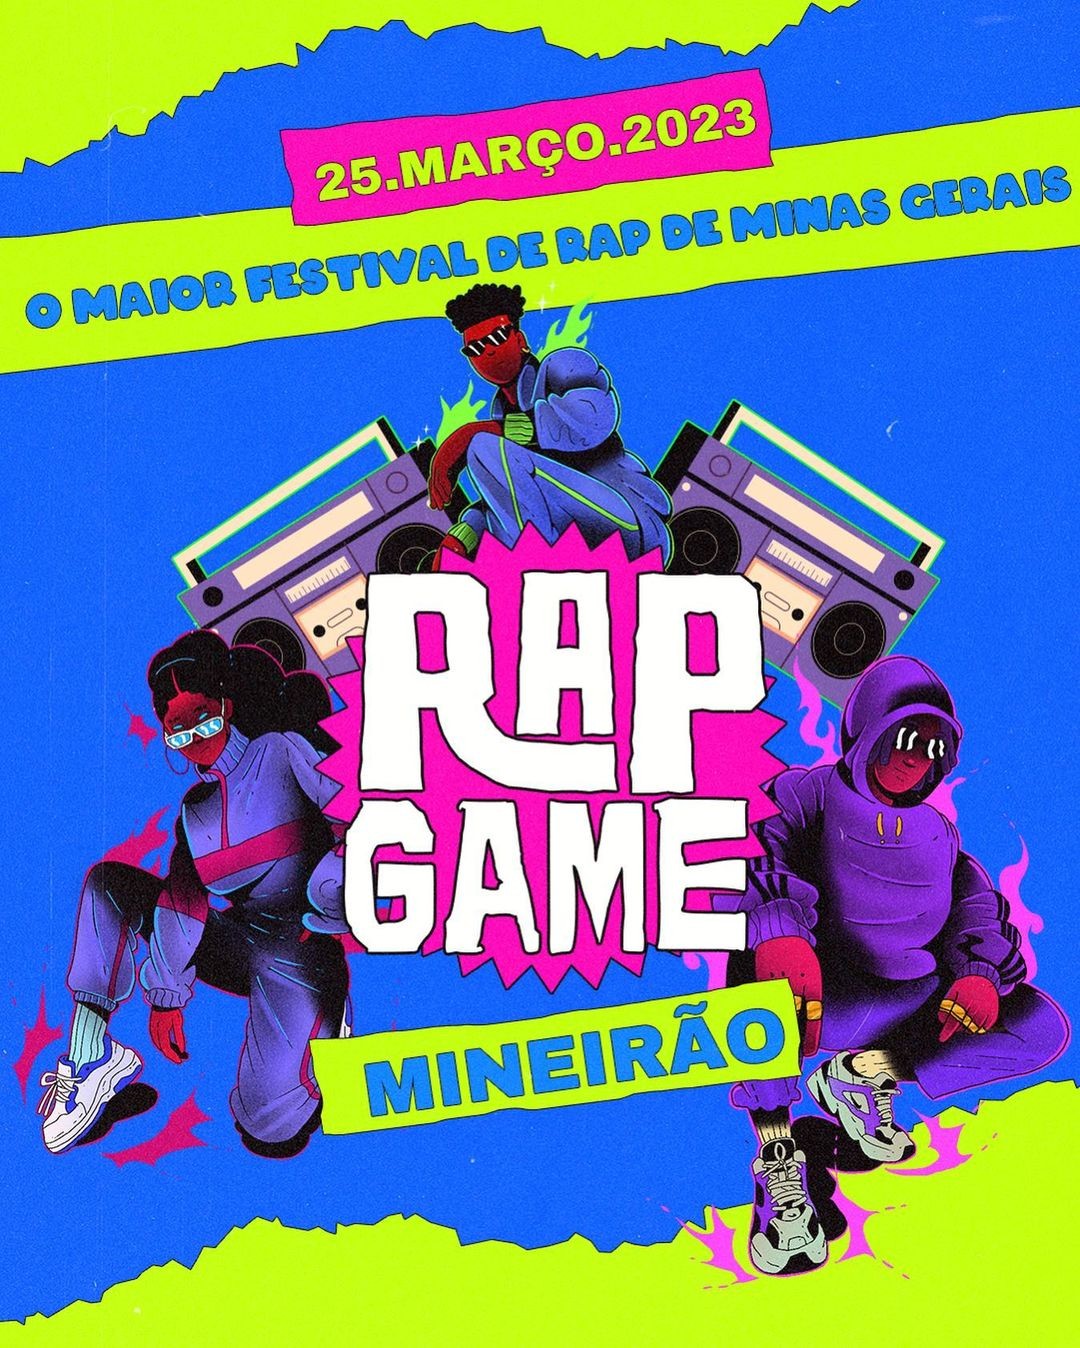 Portal Minas Gerais - Eventos: RAP GAME FESTIVAL